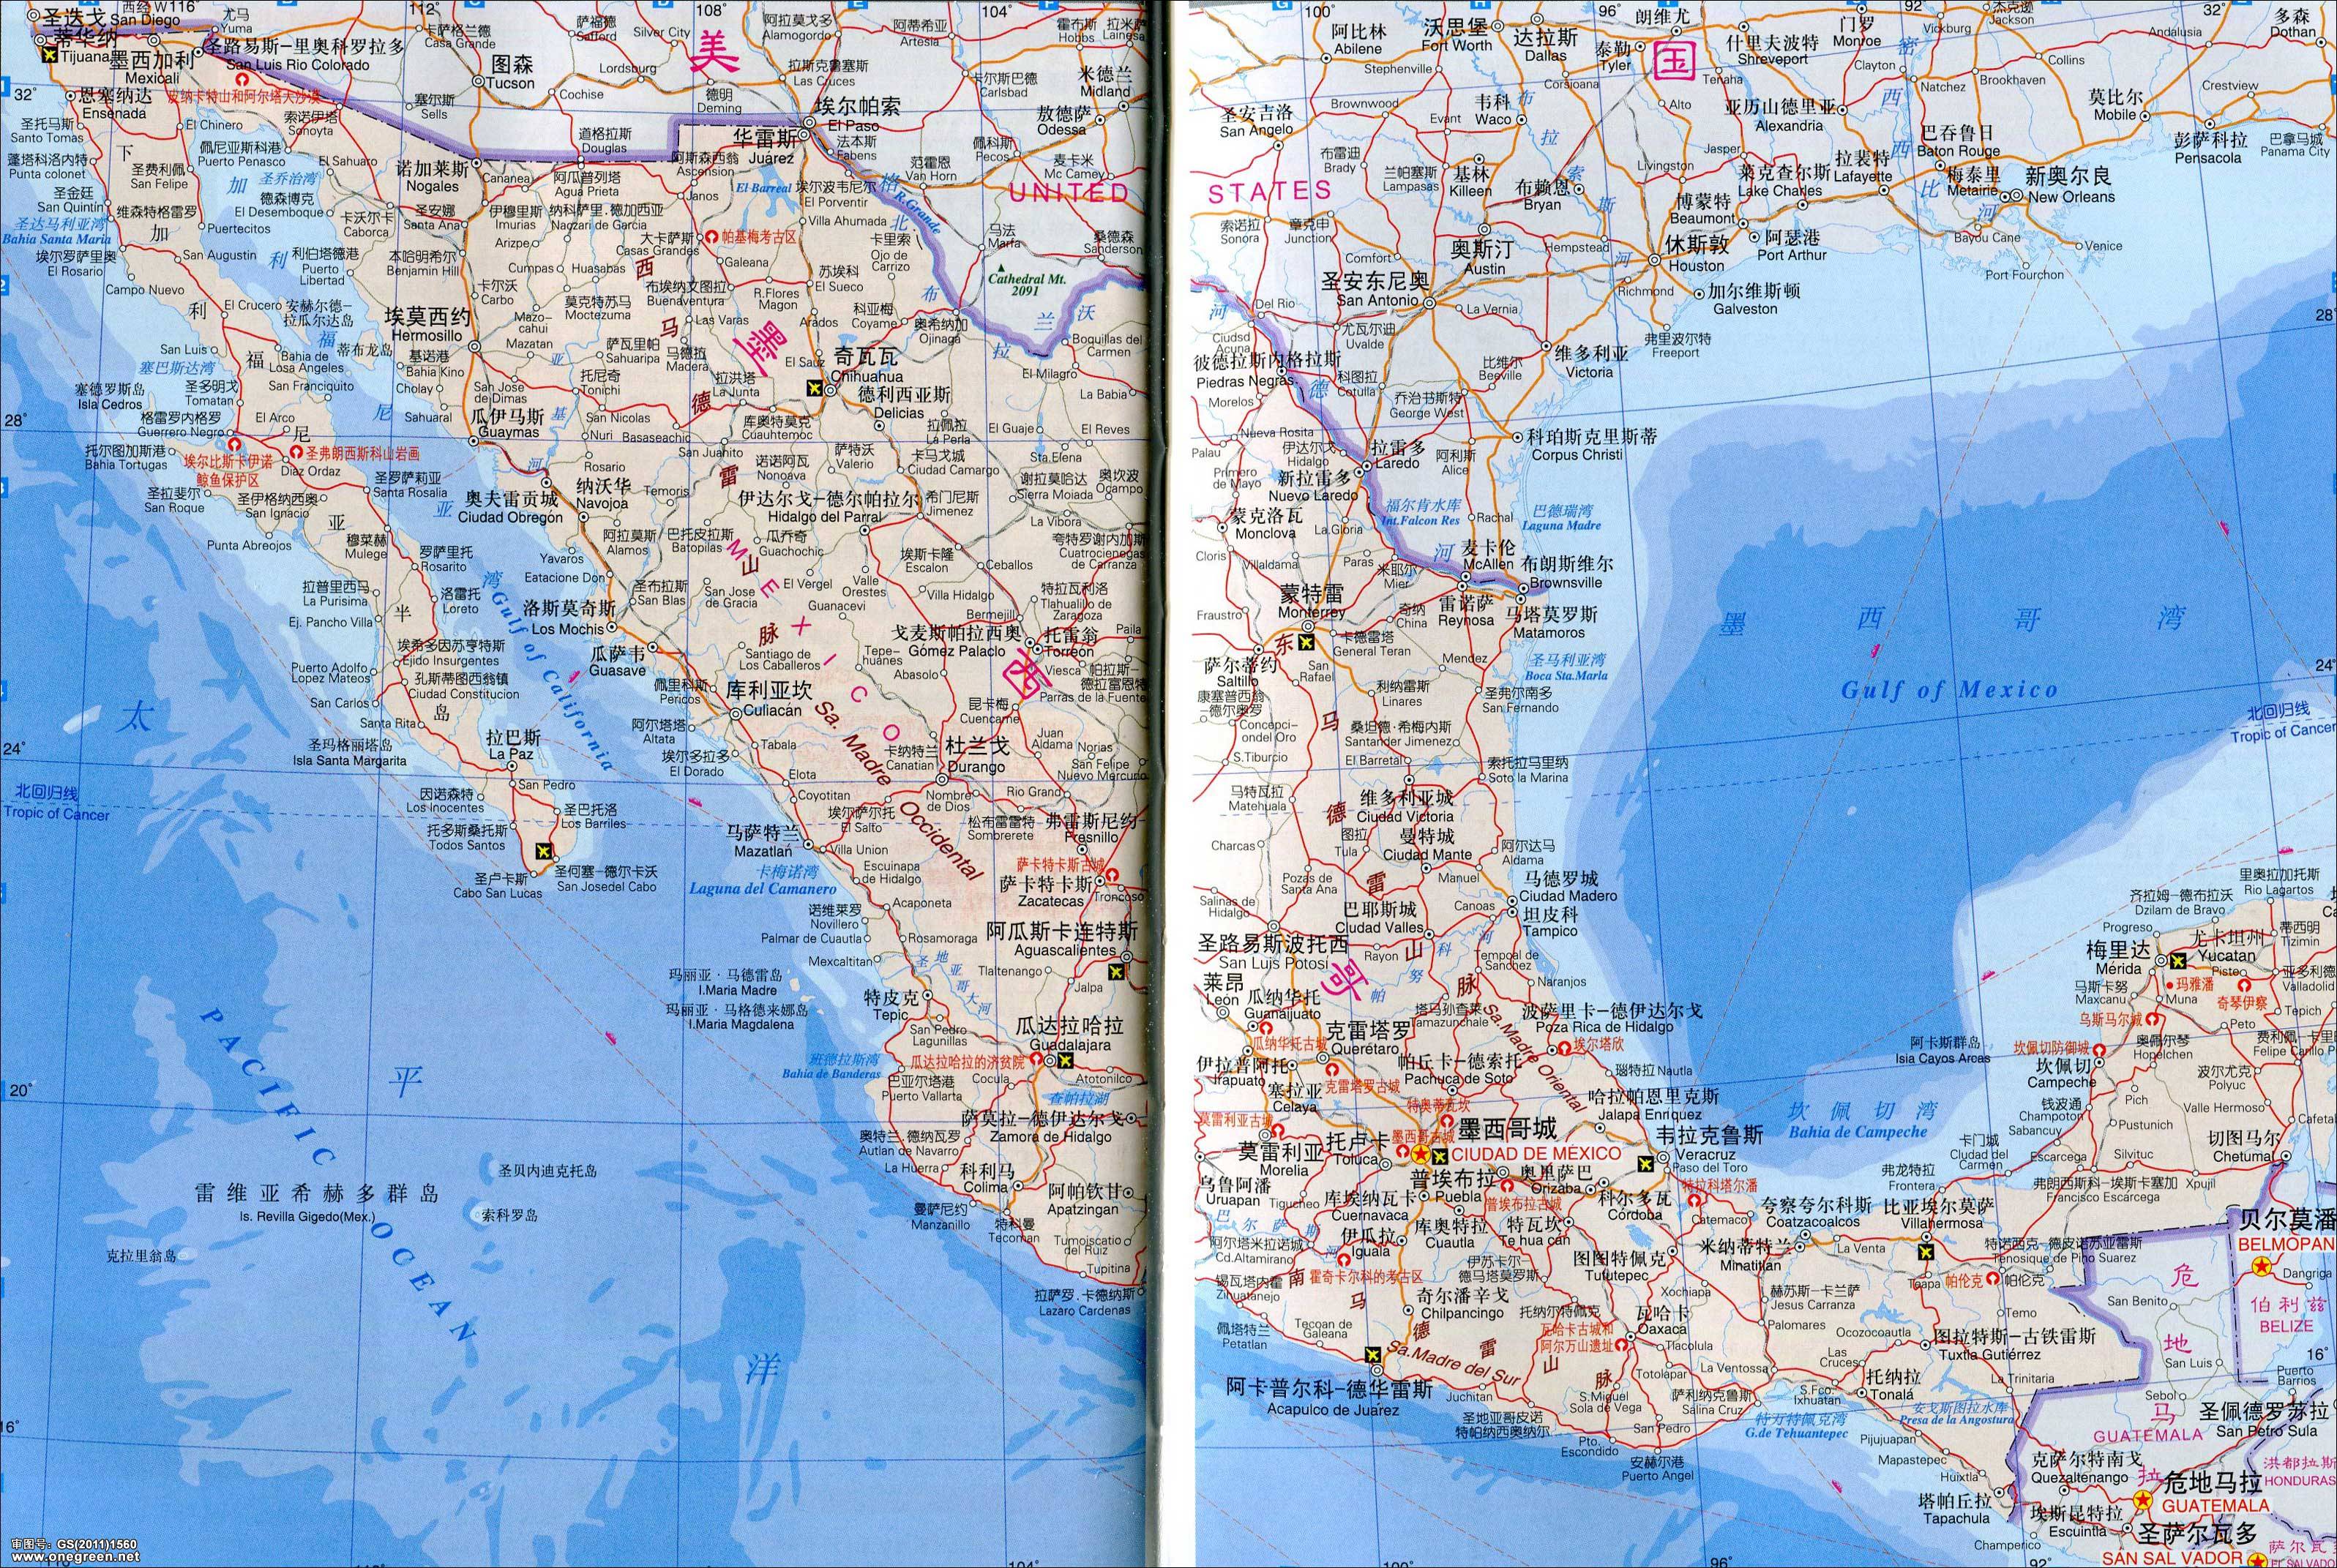 墨西哥地图(中英文版)